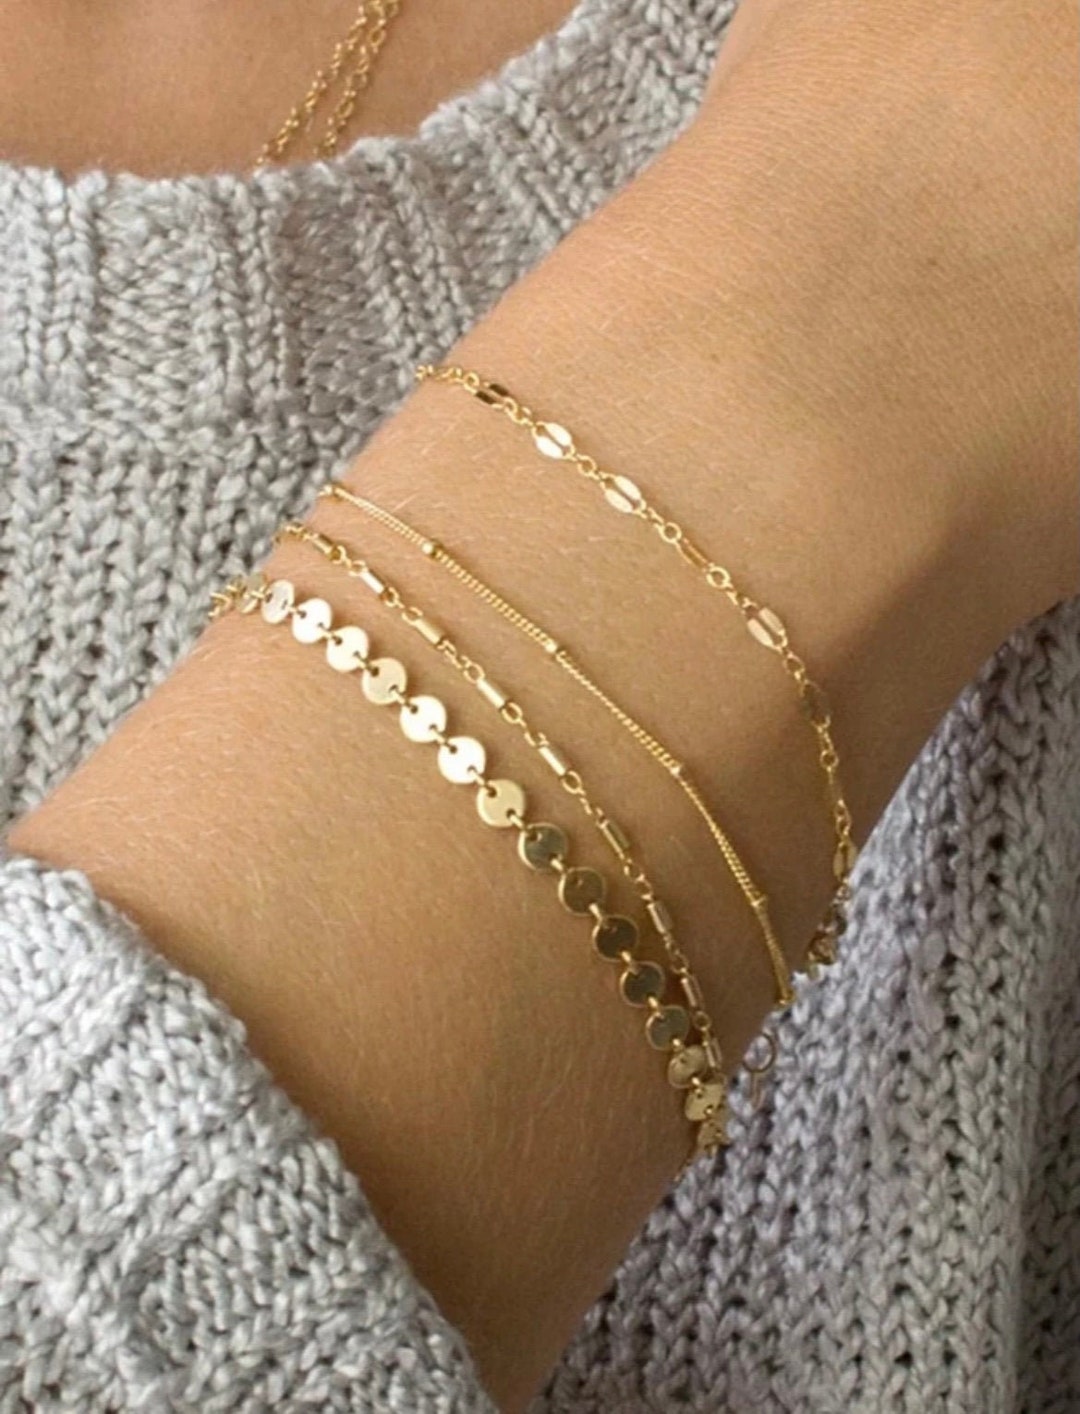 Elsie Gold Dainty Lace Chain Anklet - Waterproof Bracelet